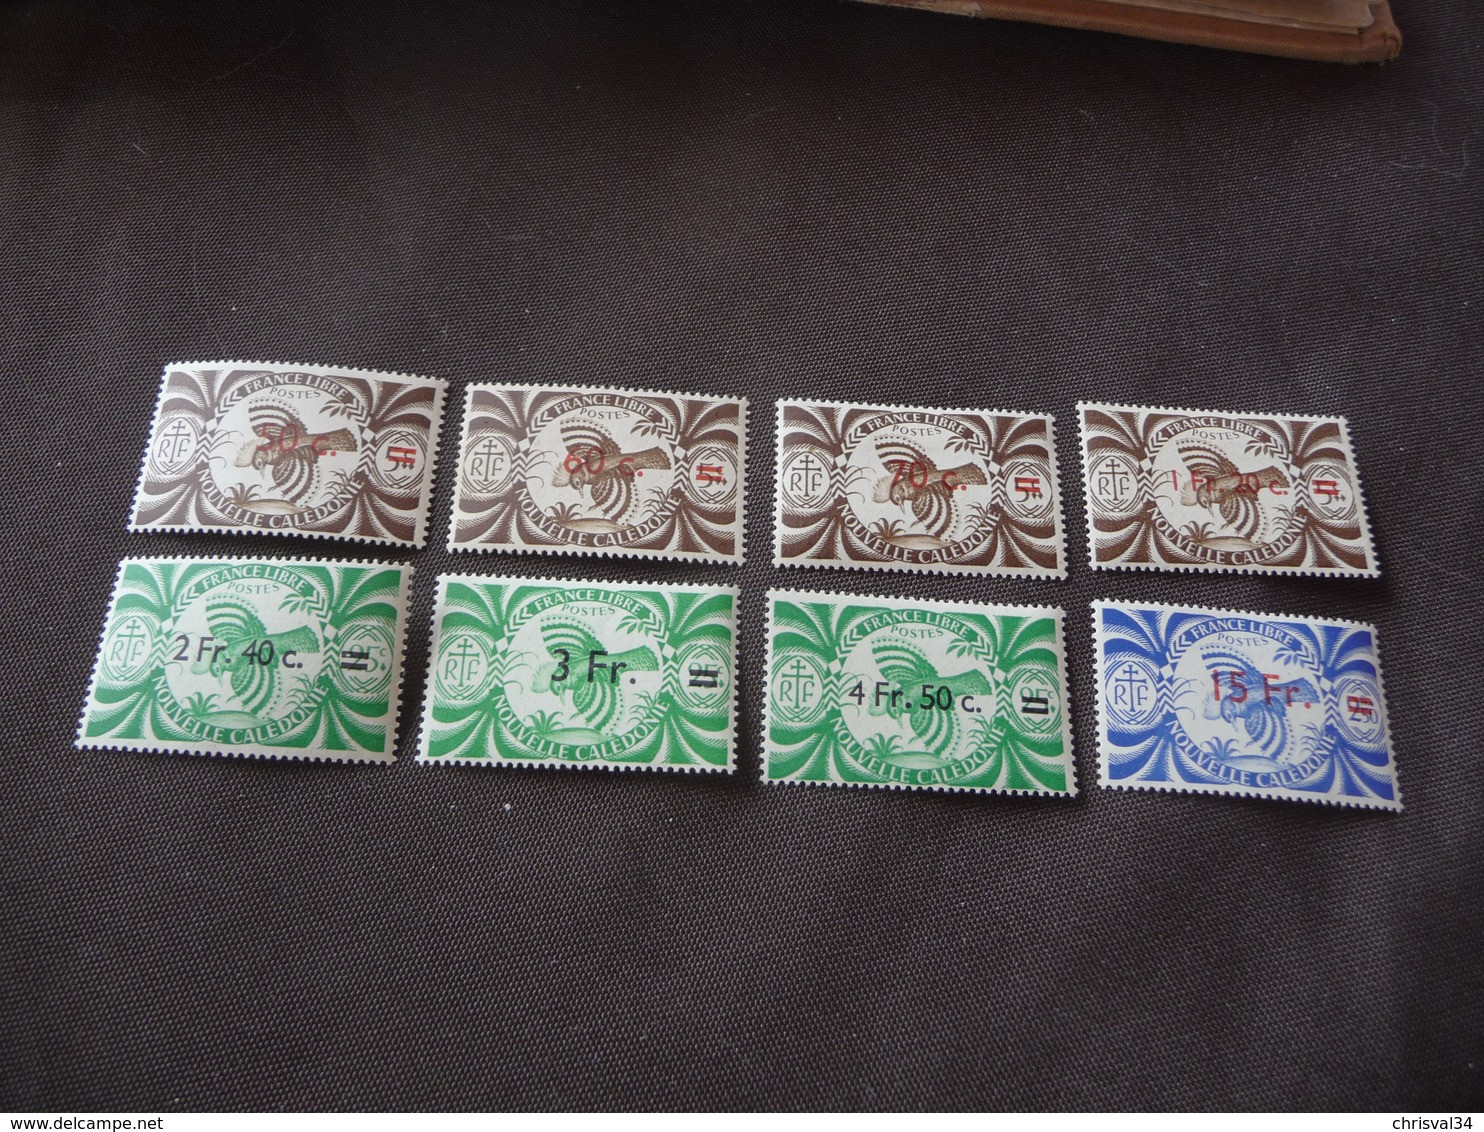 TIMBRES   NOUVELLES-CALÉDONIE      N  249   A  256     COTE 11,00  EUROS   NEUFS  TRACE  CHARNIÈRES - Unused Stamps